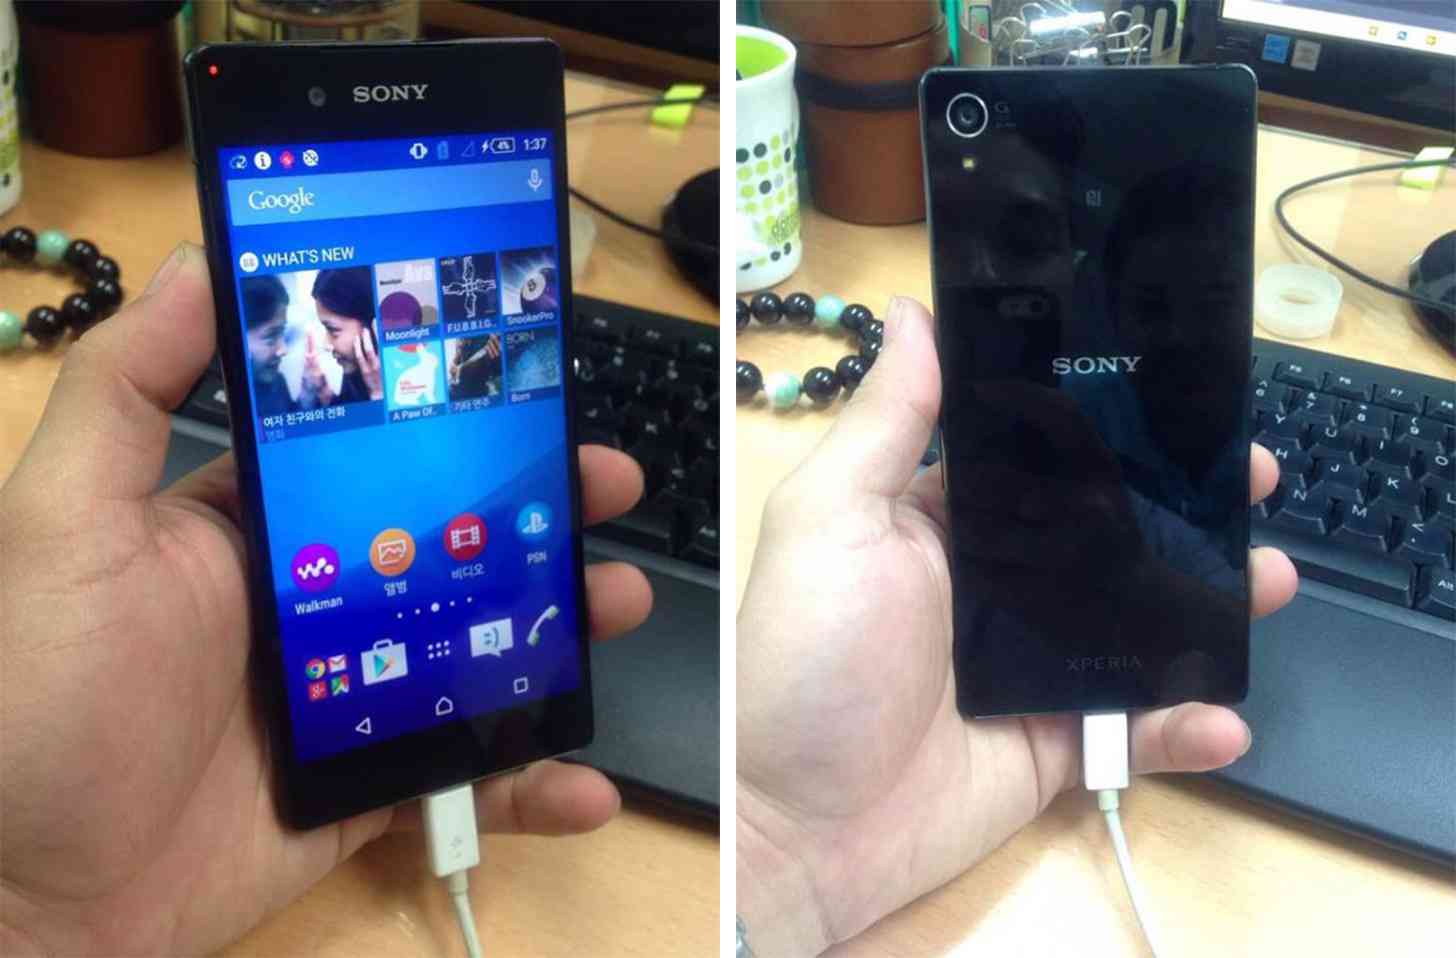 Sony Xperia Z4 photos leak